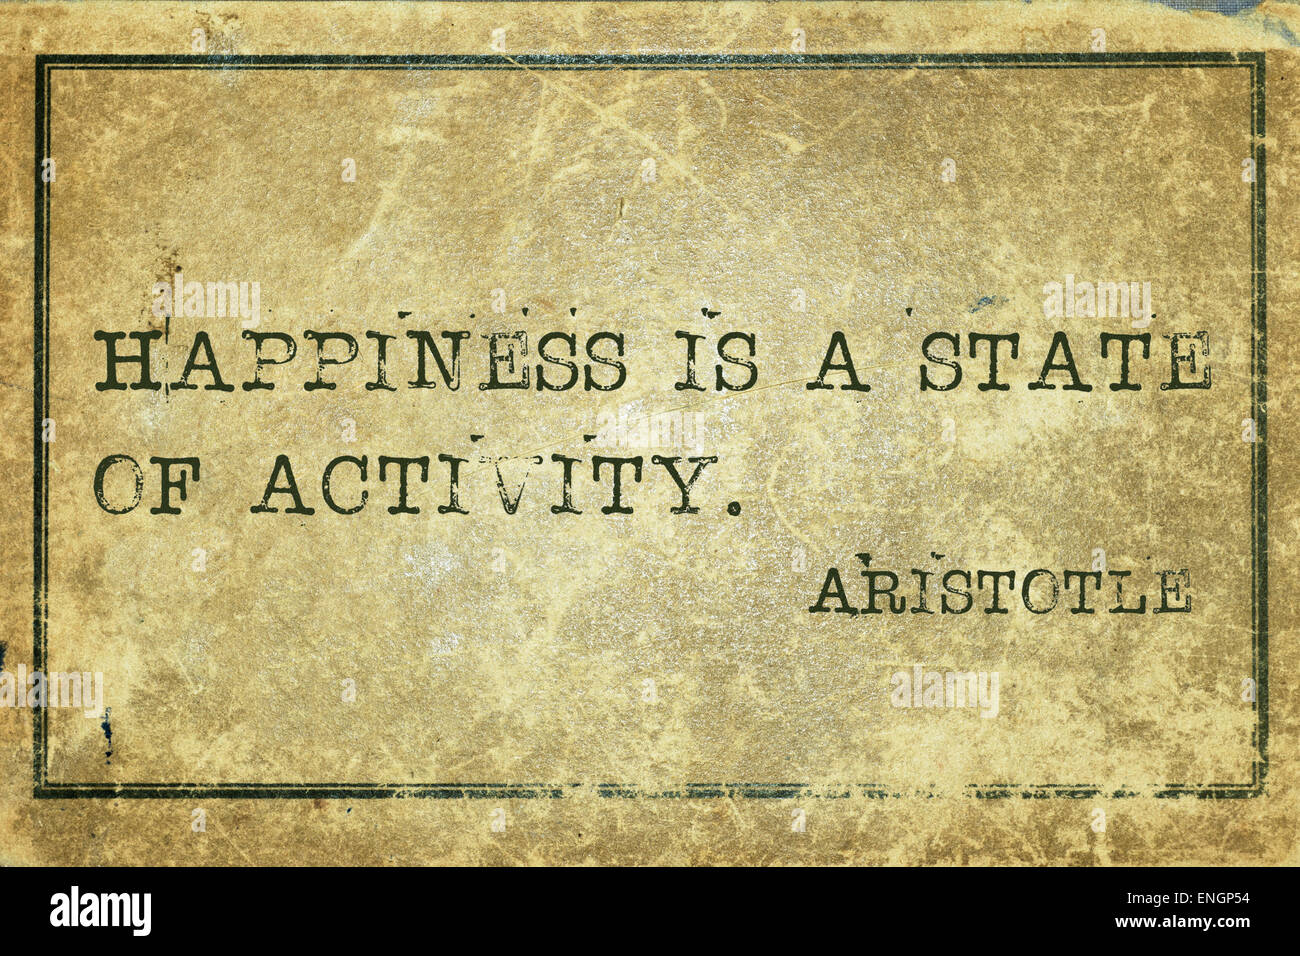 Le bonheur est un état d'activité - philosophe grec Aristote cite imprimé sur carton vintage grunge Banque D'Images